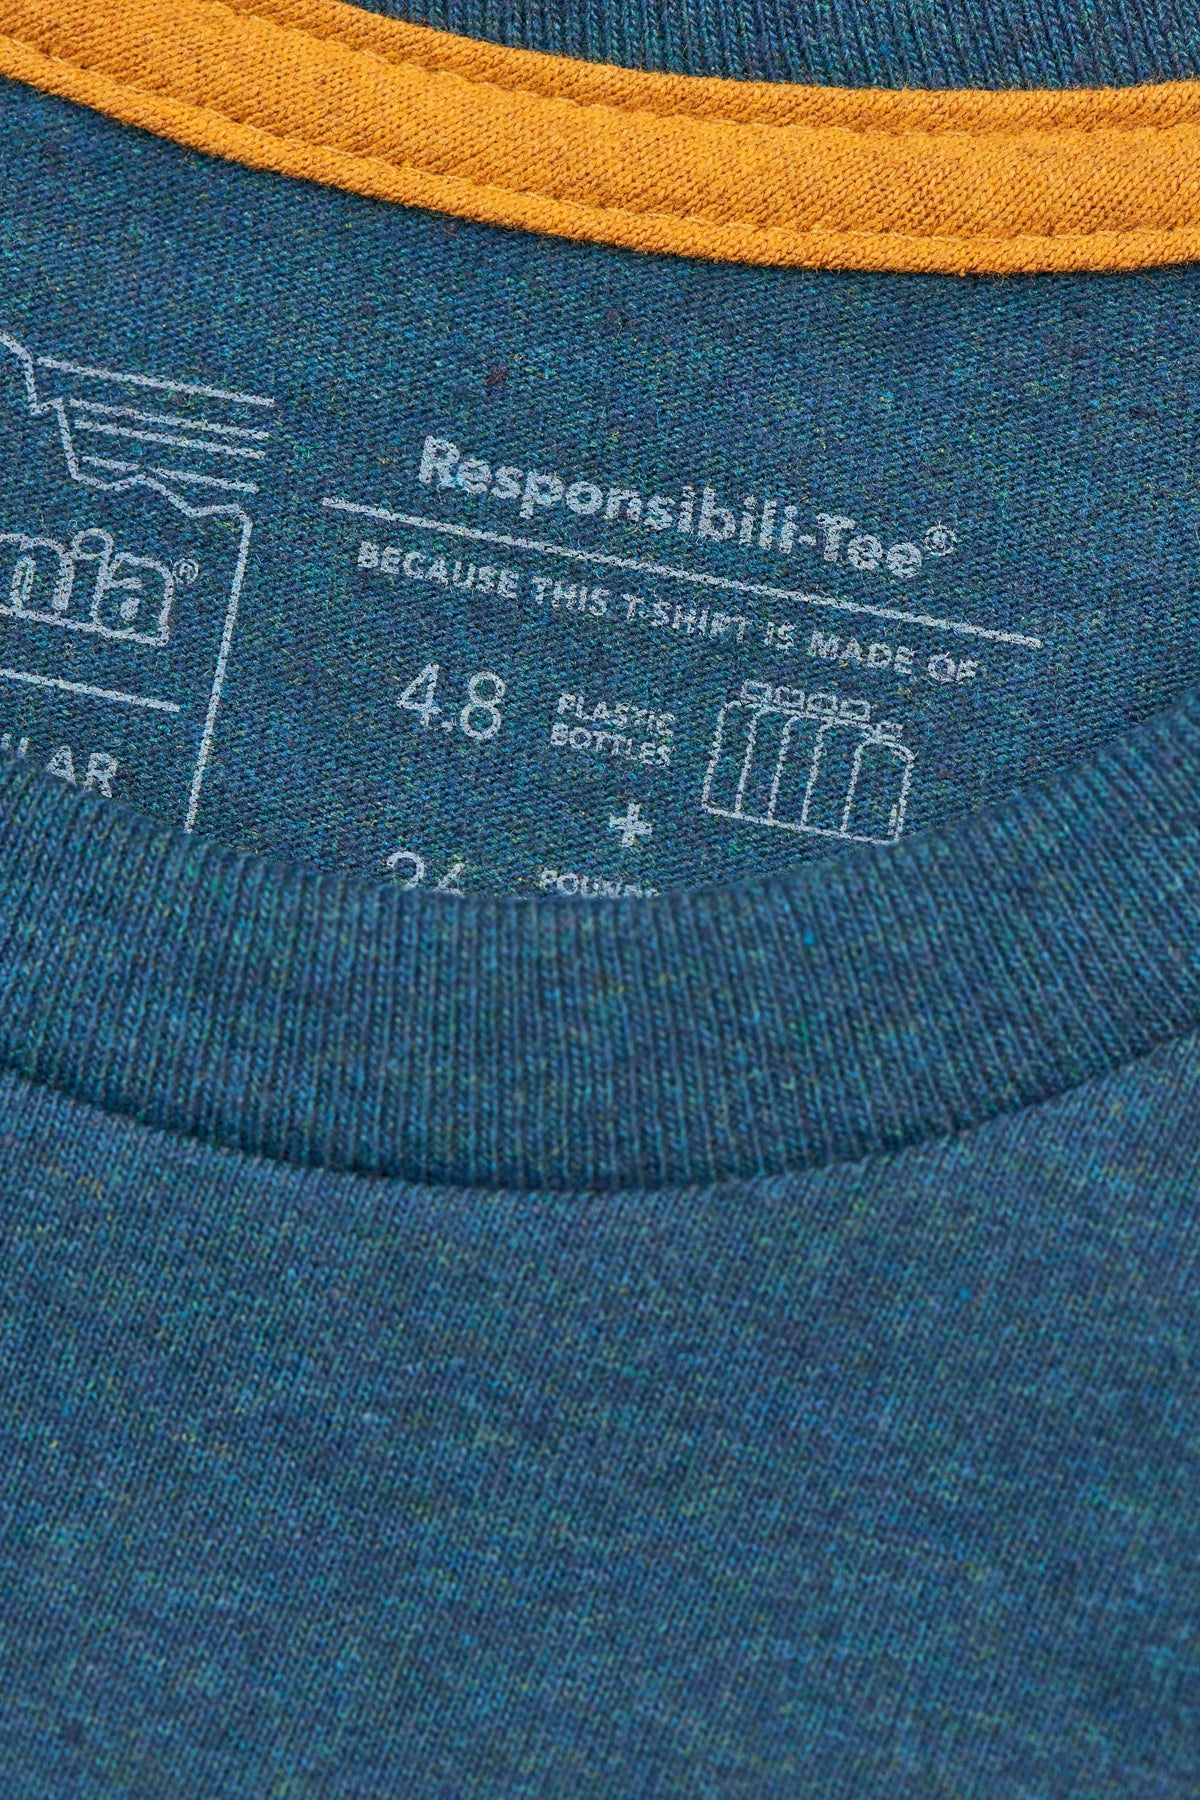 patagonia - Label pocket Tee